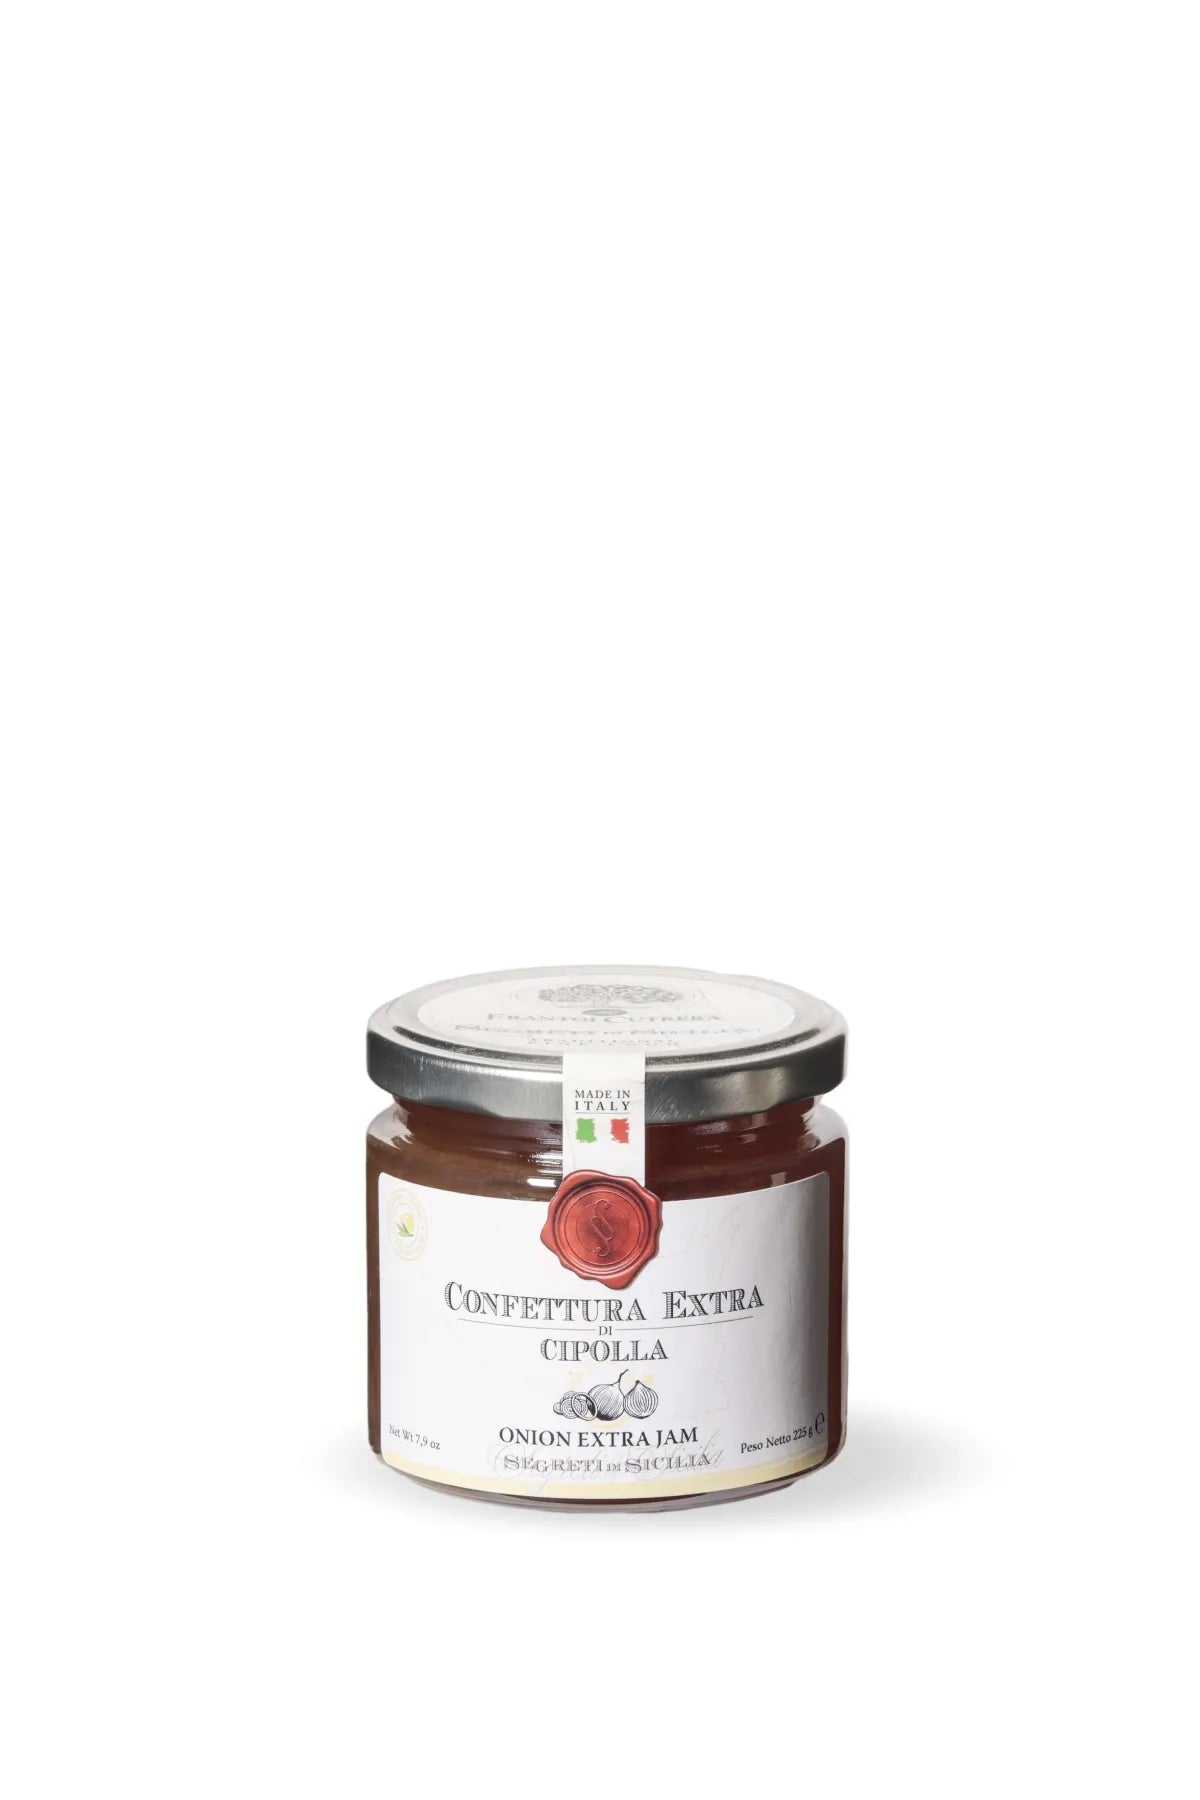 Confettura Extra di cipolle – Segreti di Sicilia